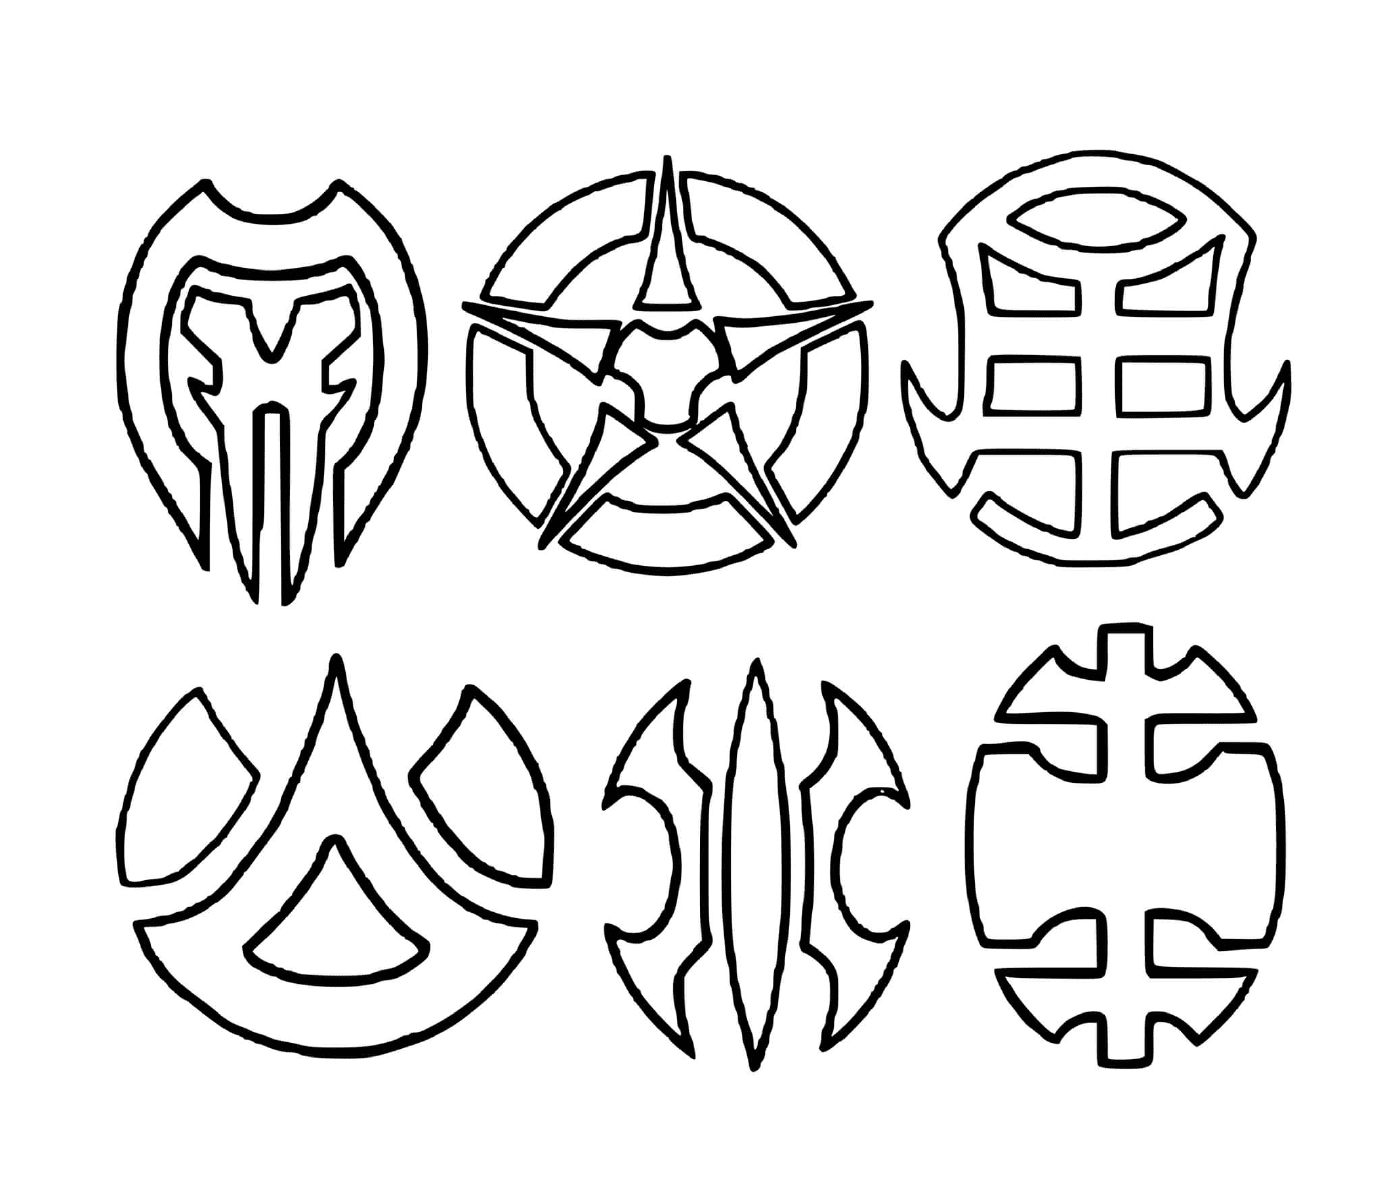  um conjunto de seis símbolos desenhados 